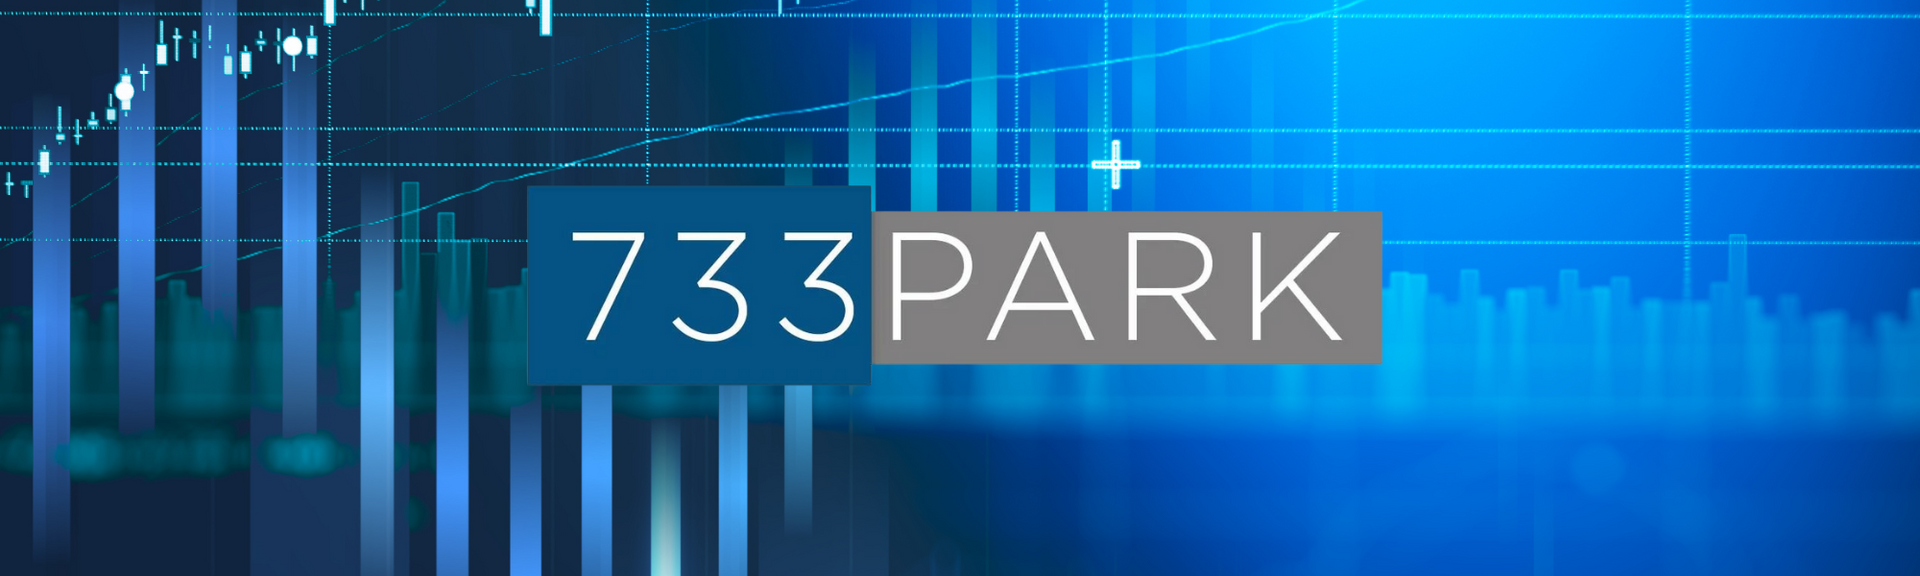 733Park M&A Market prediction